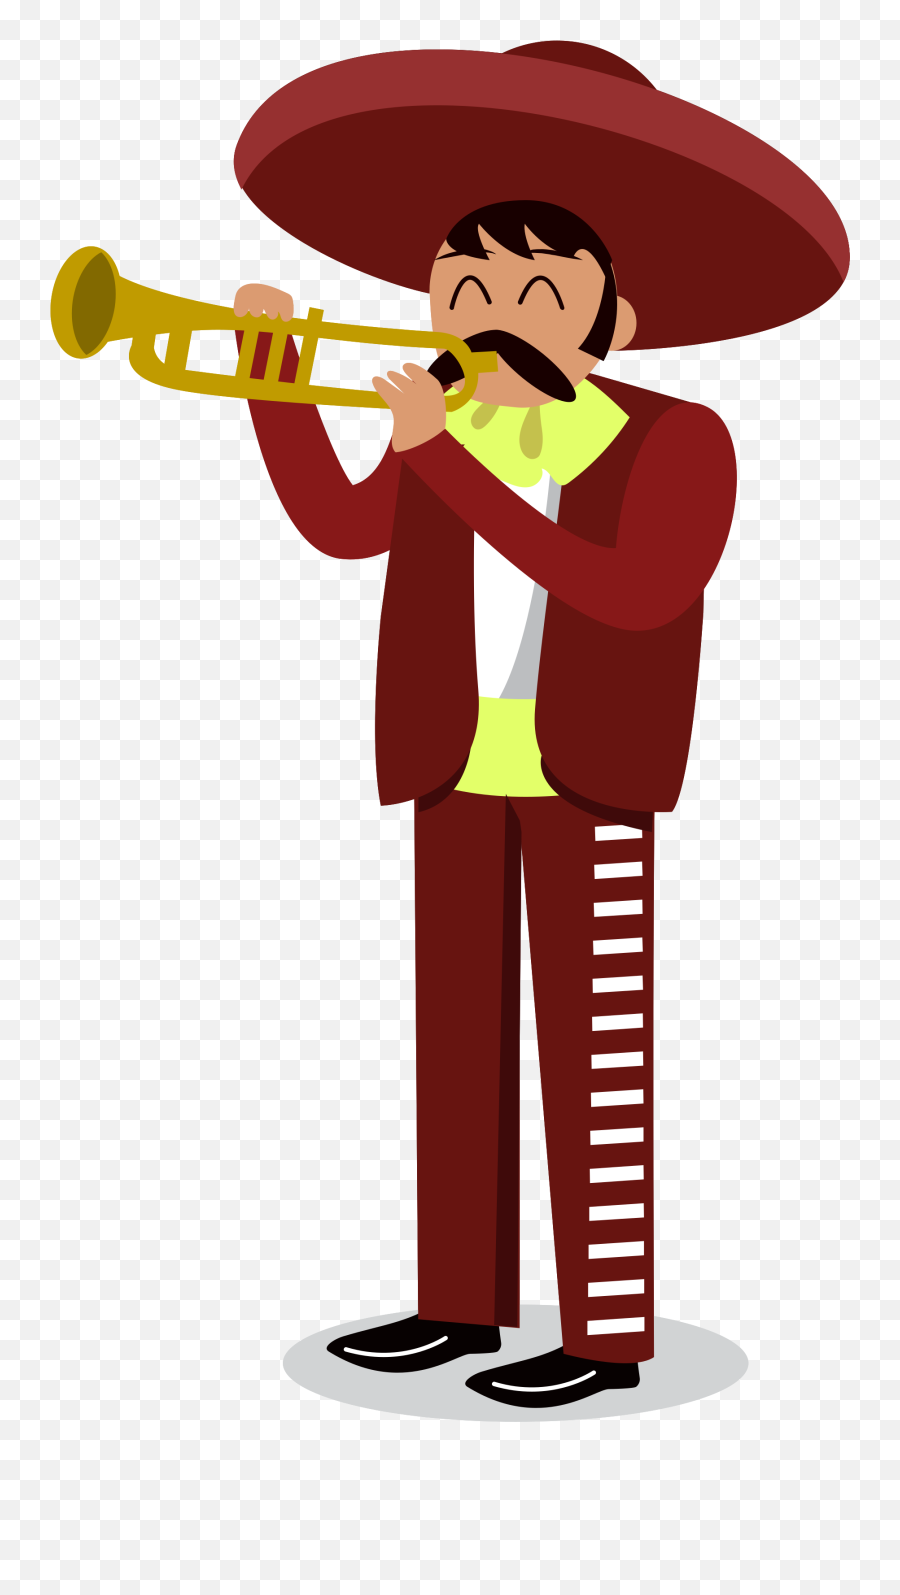 Free Mariachi Musician Playing Trumpet - Musica De 16 De Septiembre Emoji,Facebook Emoticon Mariachi